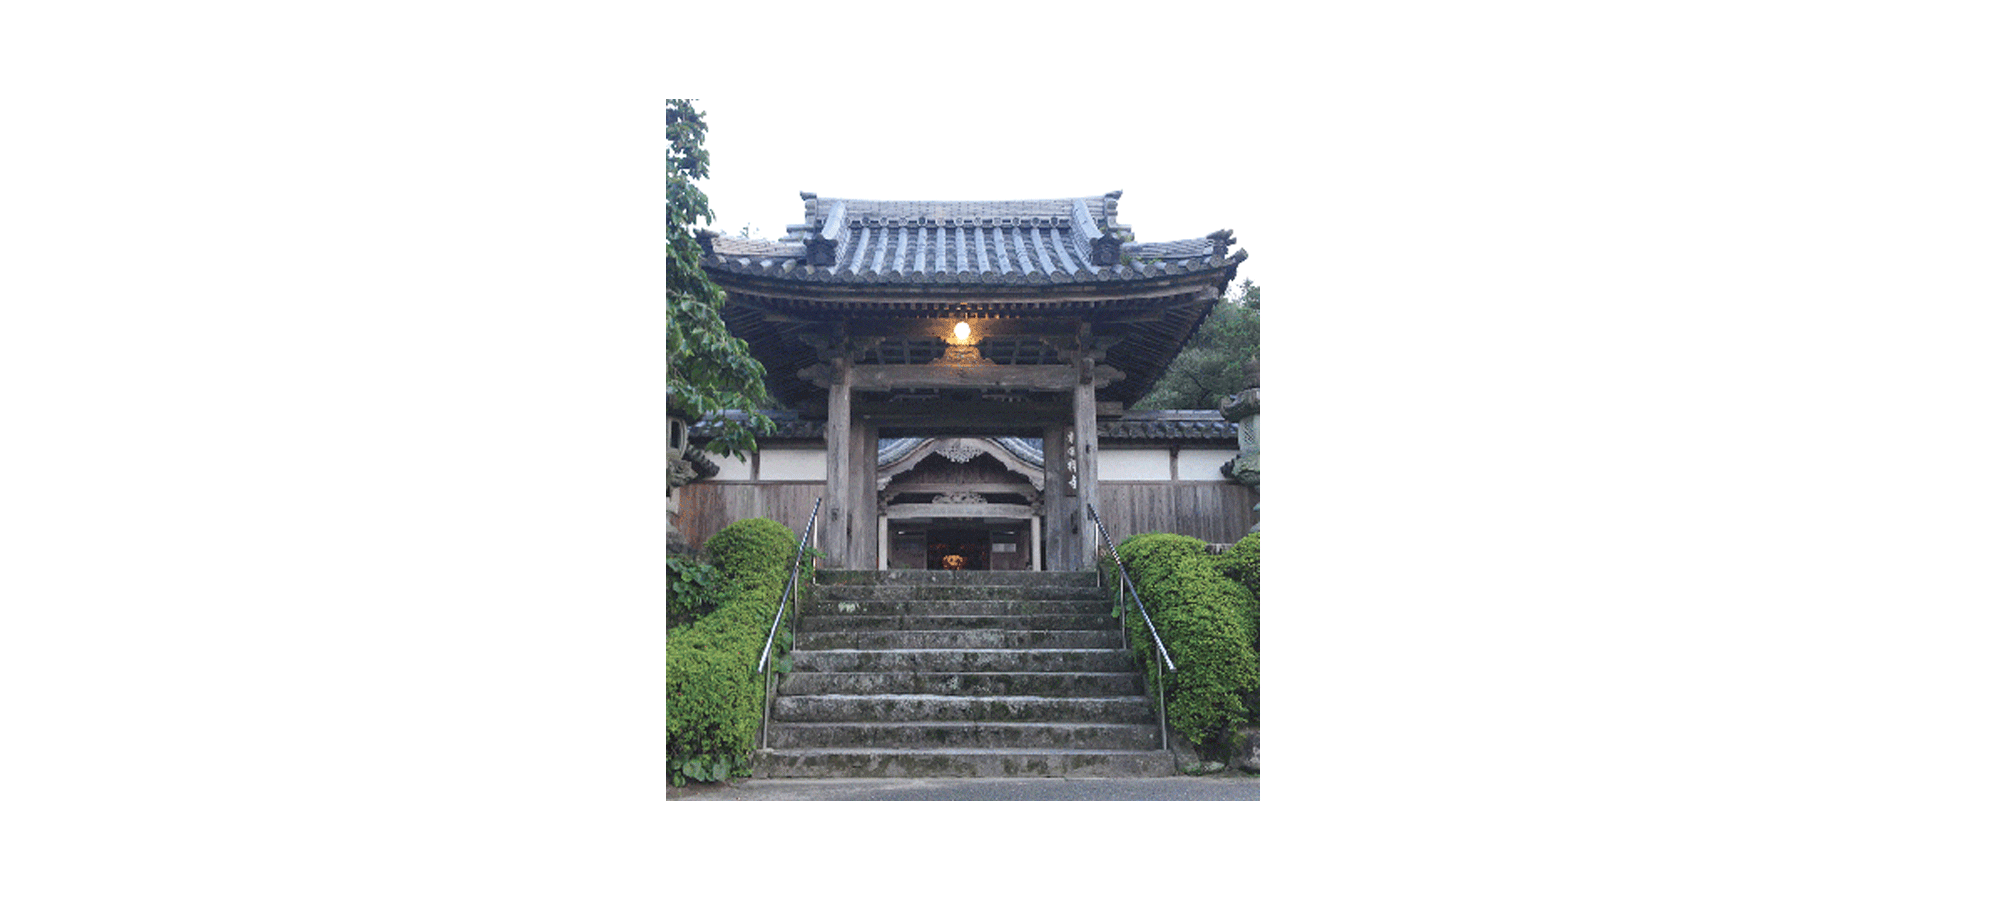 糸島にある800年の歴史を持つ龍国寺にて